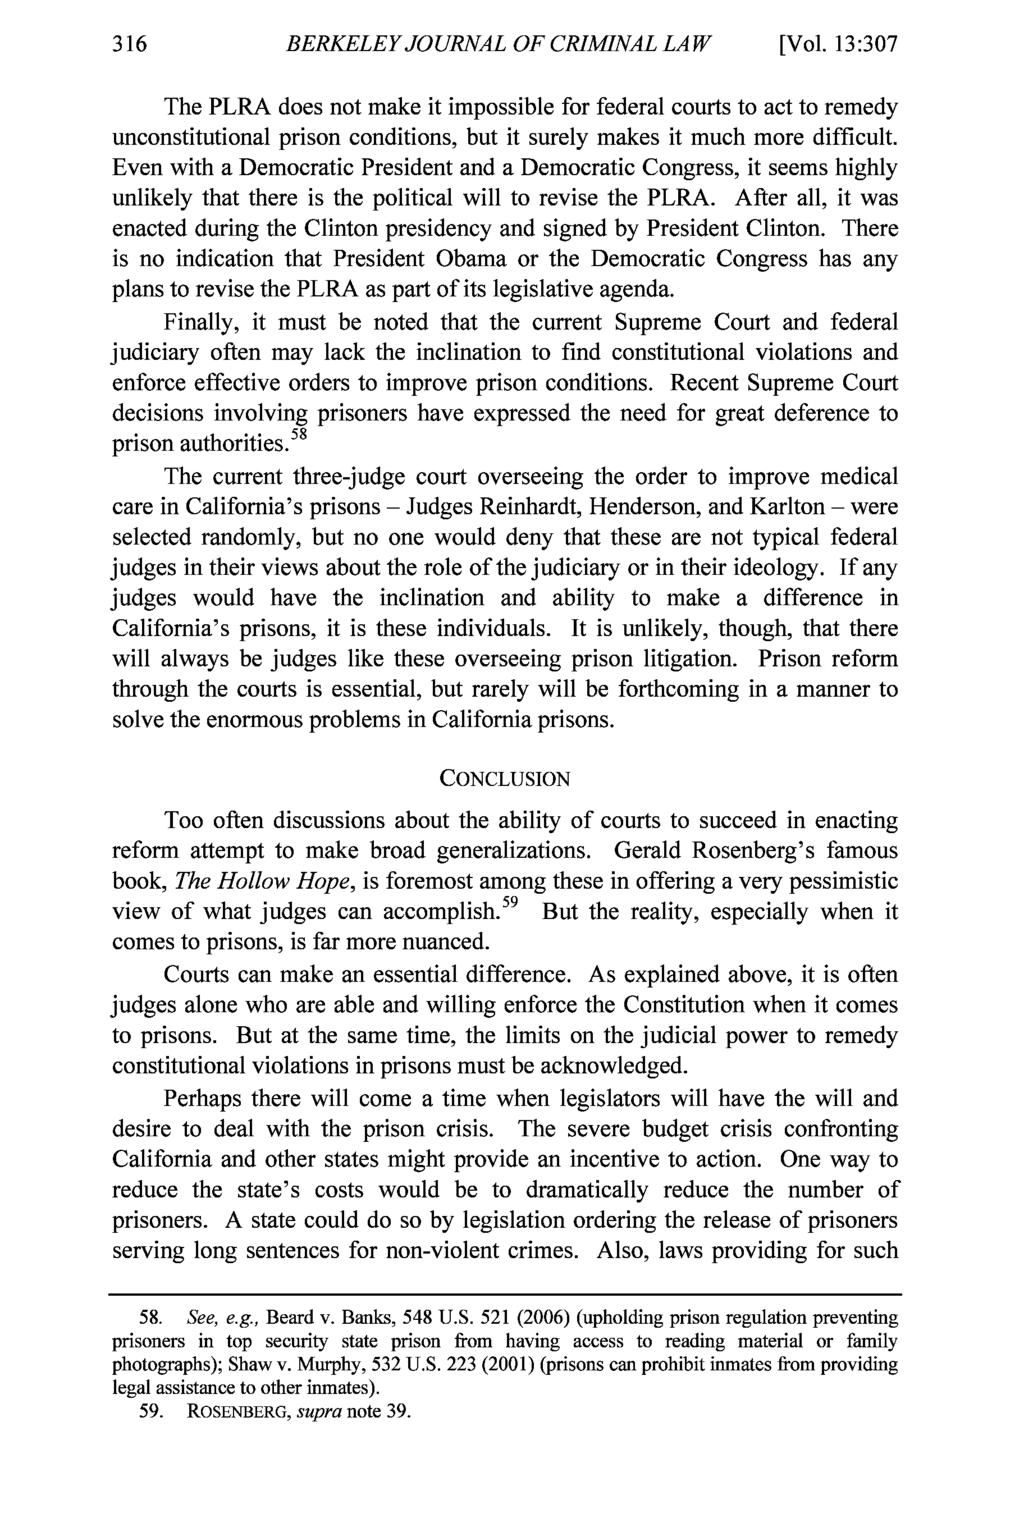 BERKELEY JOURNAL OF CRIMINAL LAW Berkeley Journal of Criminal Law, Vol. 13, Iss. 2 [2008], Art. 5 [Vol.